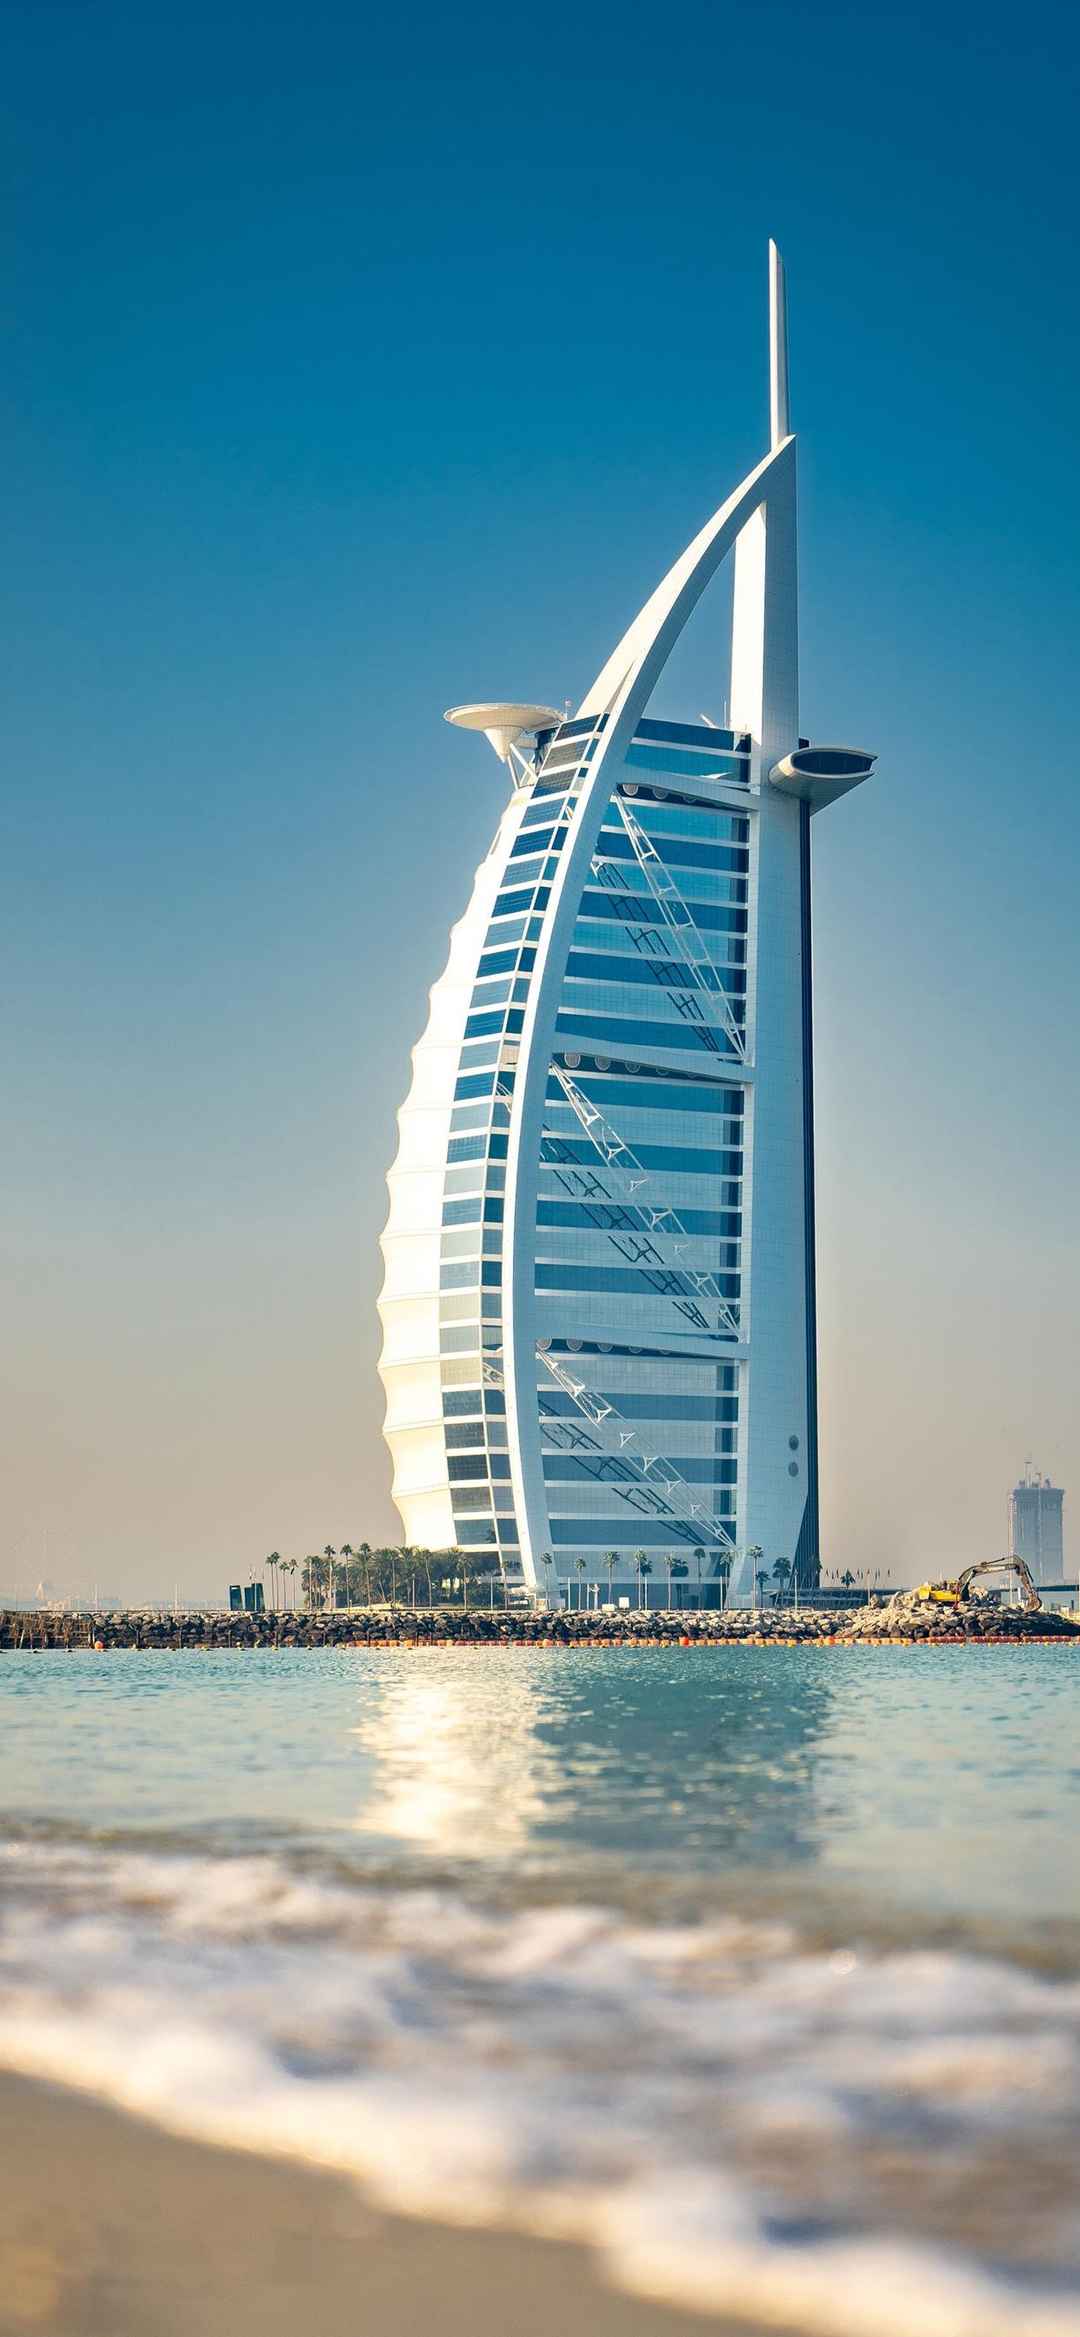 迪拜特色建筑风景图片